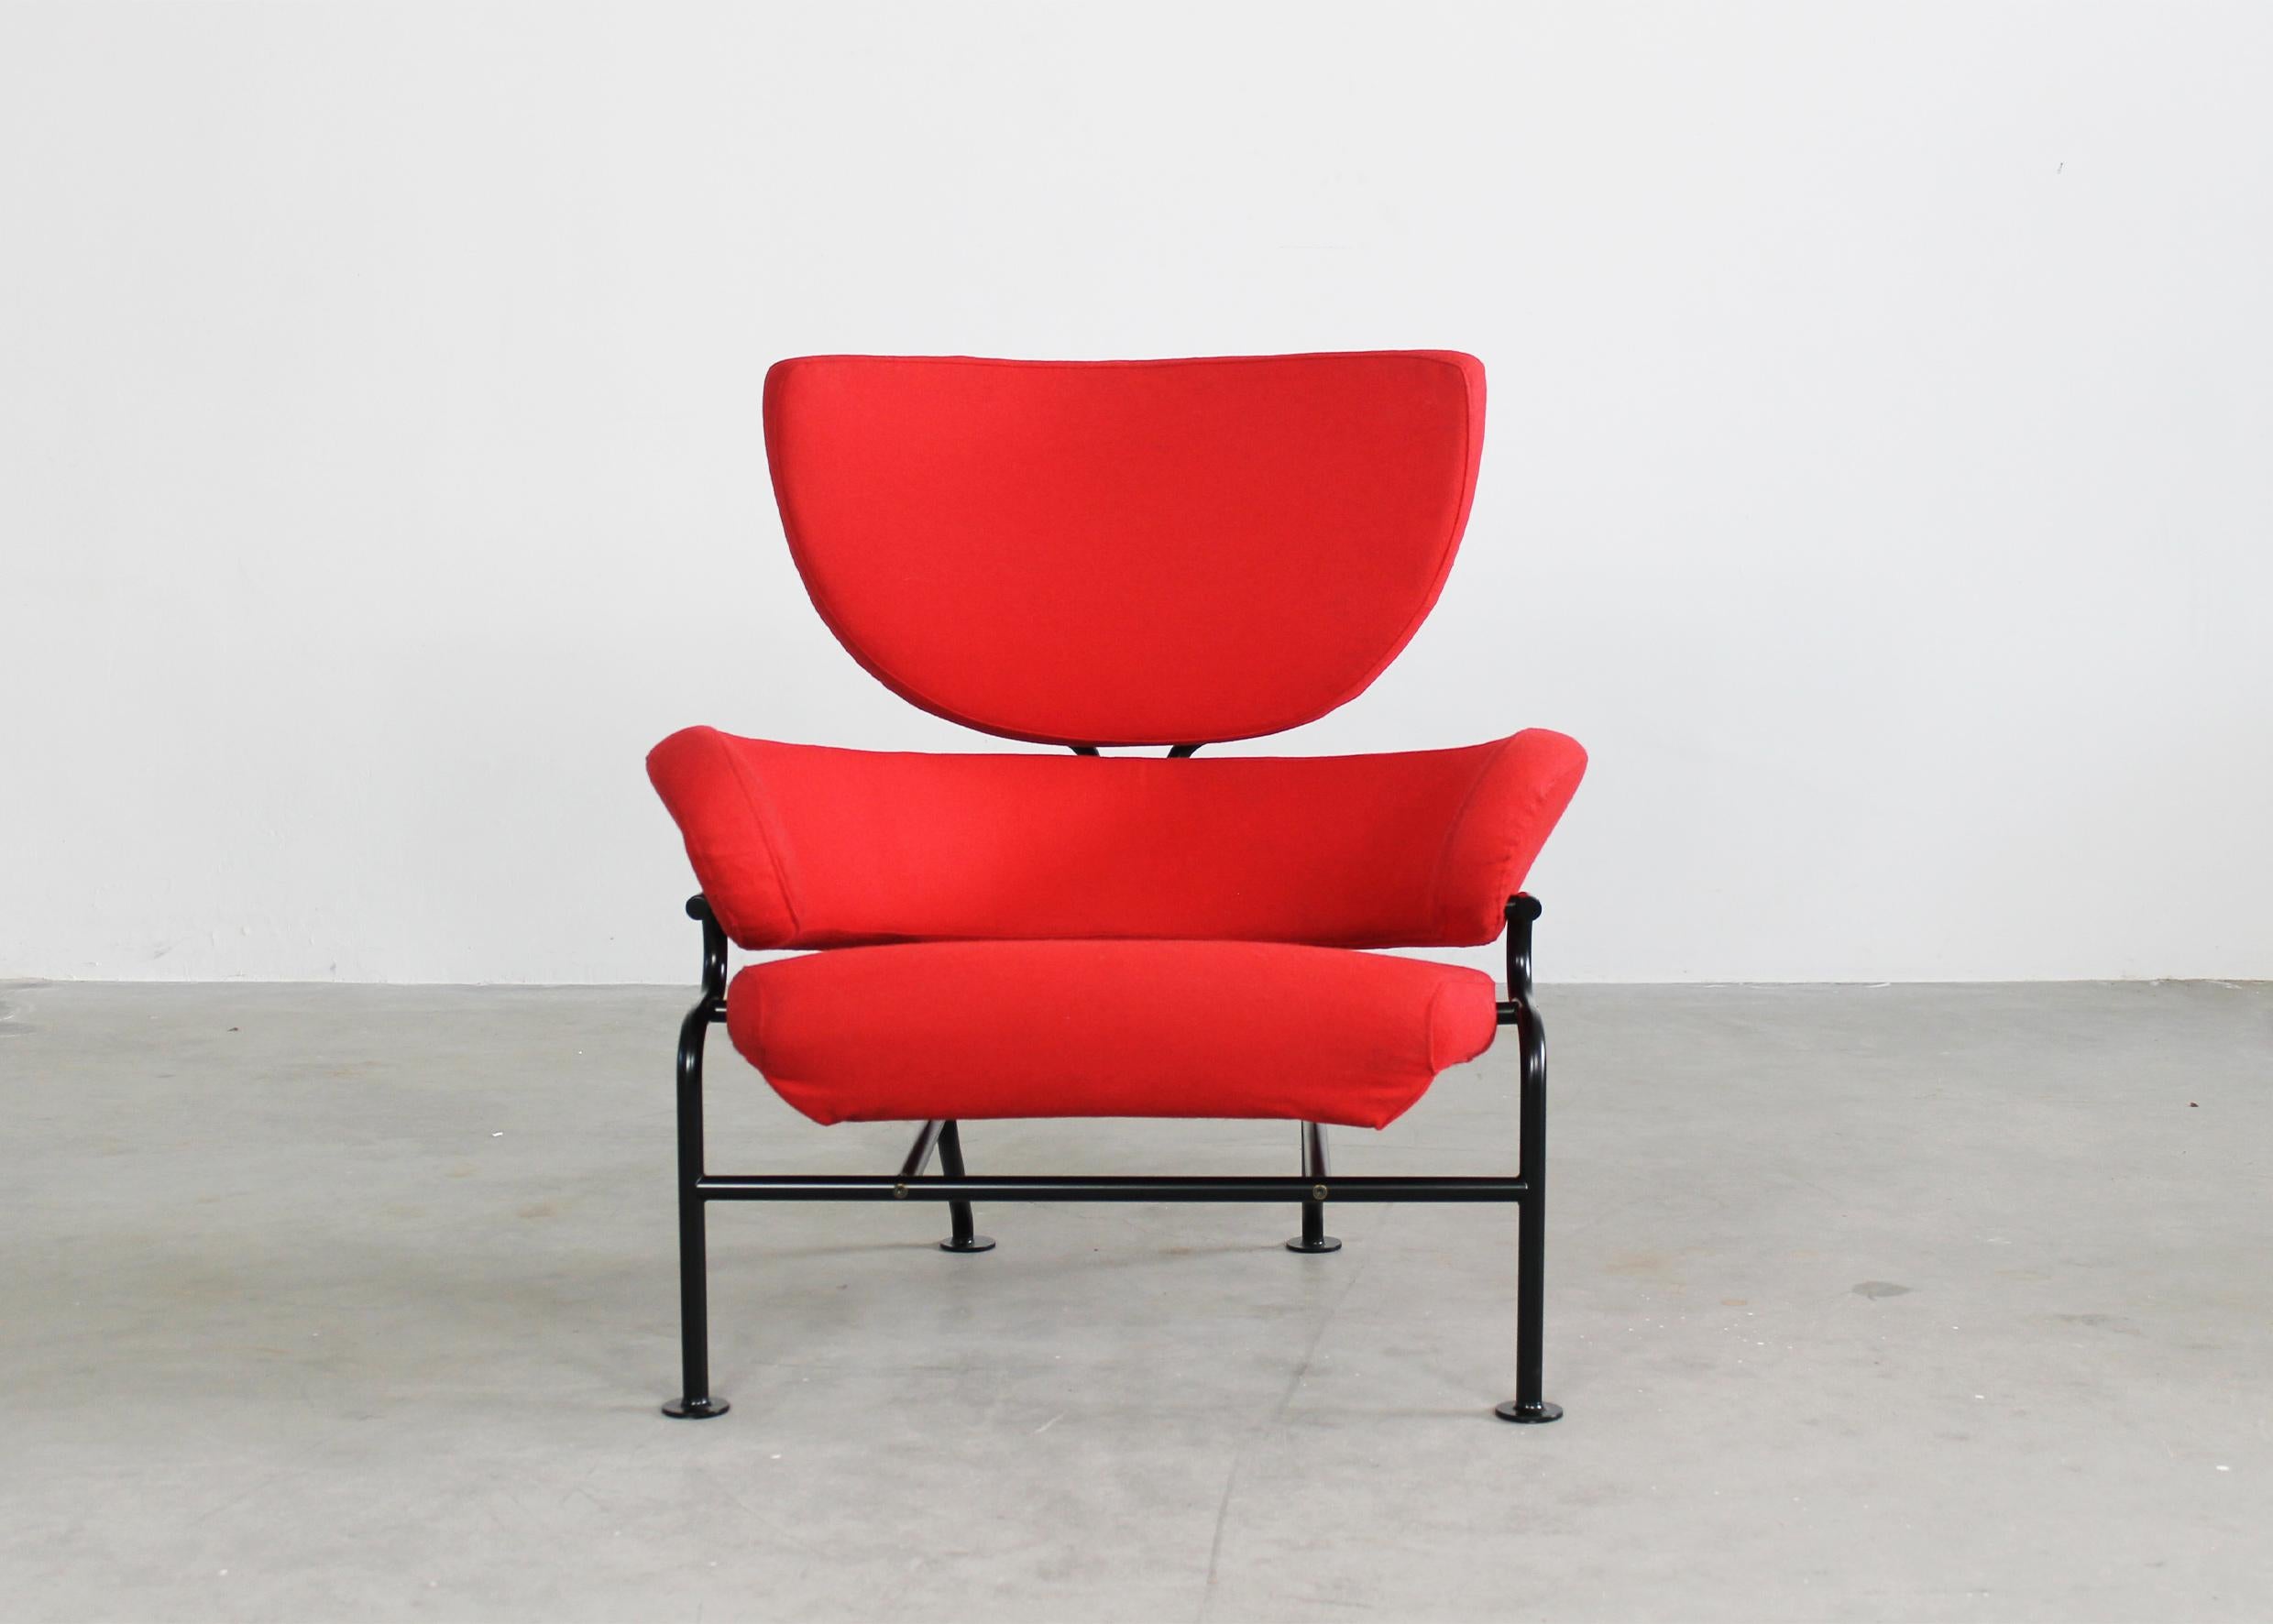 PL19 oder Tre Pezzi Sessel mit Gestell aus schwarz lackiertem Stahlrohr, Sitz und Rückenlehne aus gepolstertem rotem Stoff. 
Entworfen von Franco Albini und Franca Helg im Jahr 1959 für die Nuove terme Luigi Zoja in Salsomaggiore, Italien, und